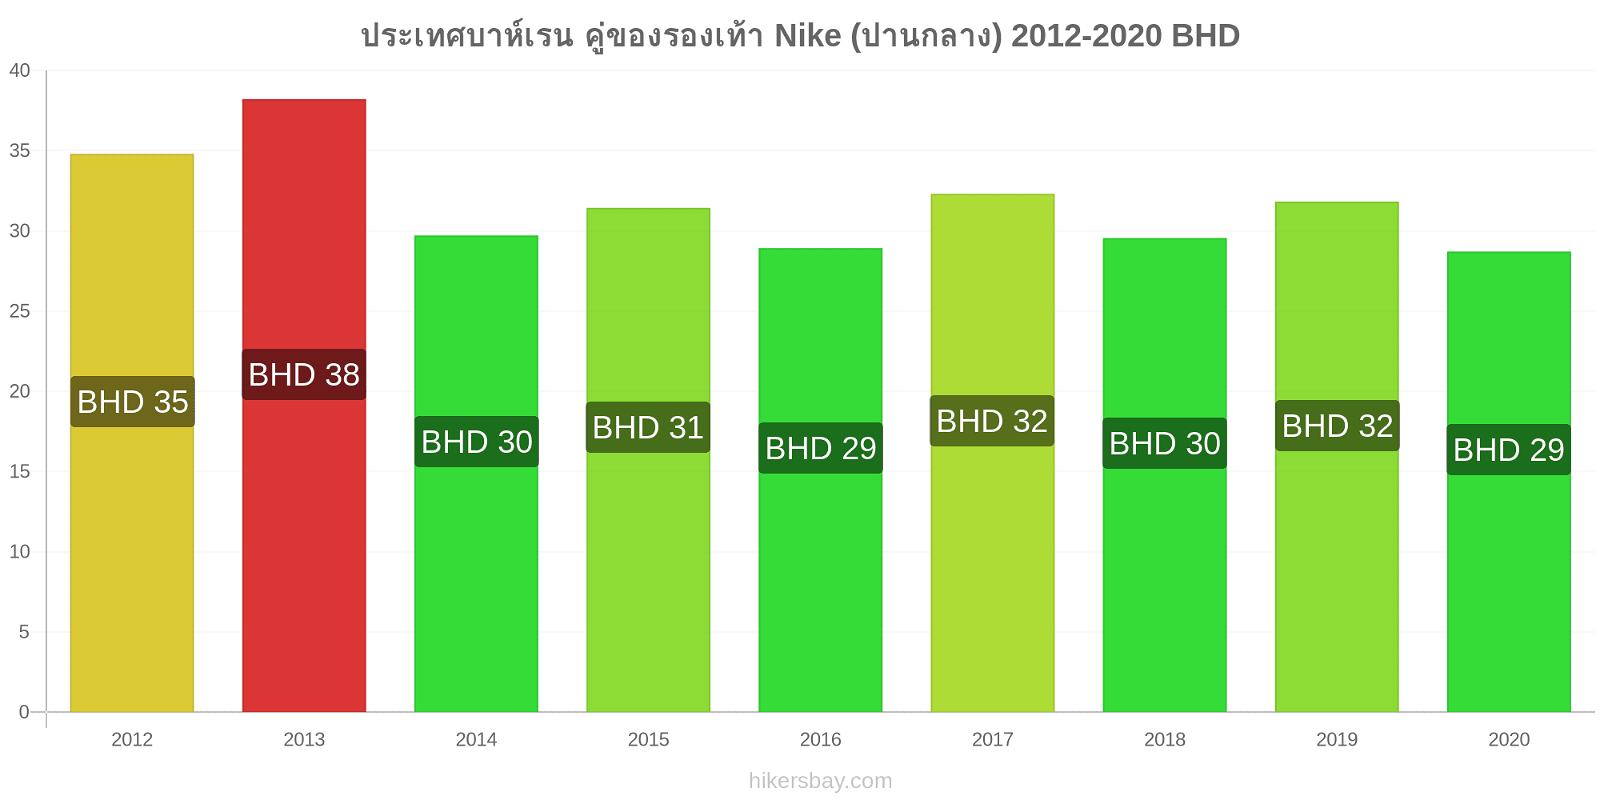 ประเทศบาห์เรน การเปลี่ยนแปลงราคา คู่ของรองเท้า Nike (ปานกลาง) hikersbay.com